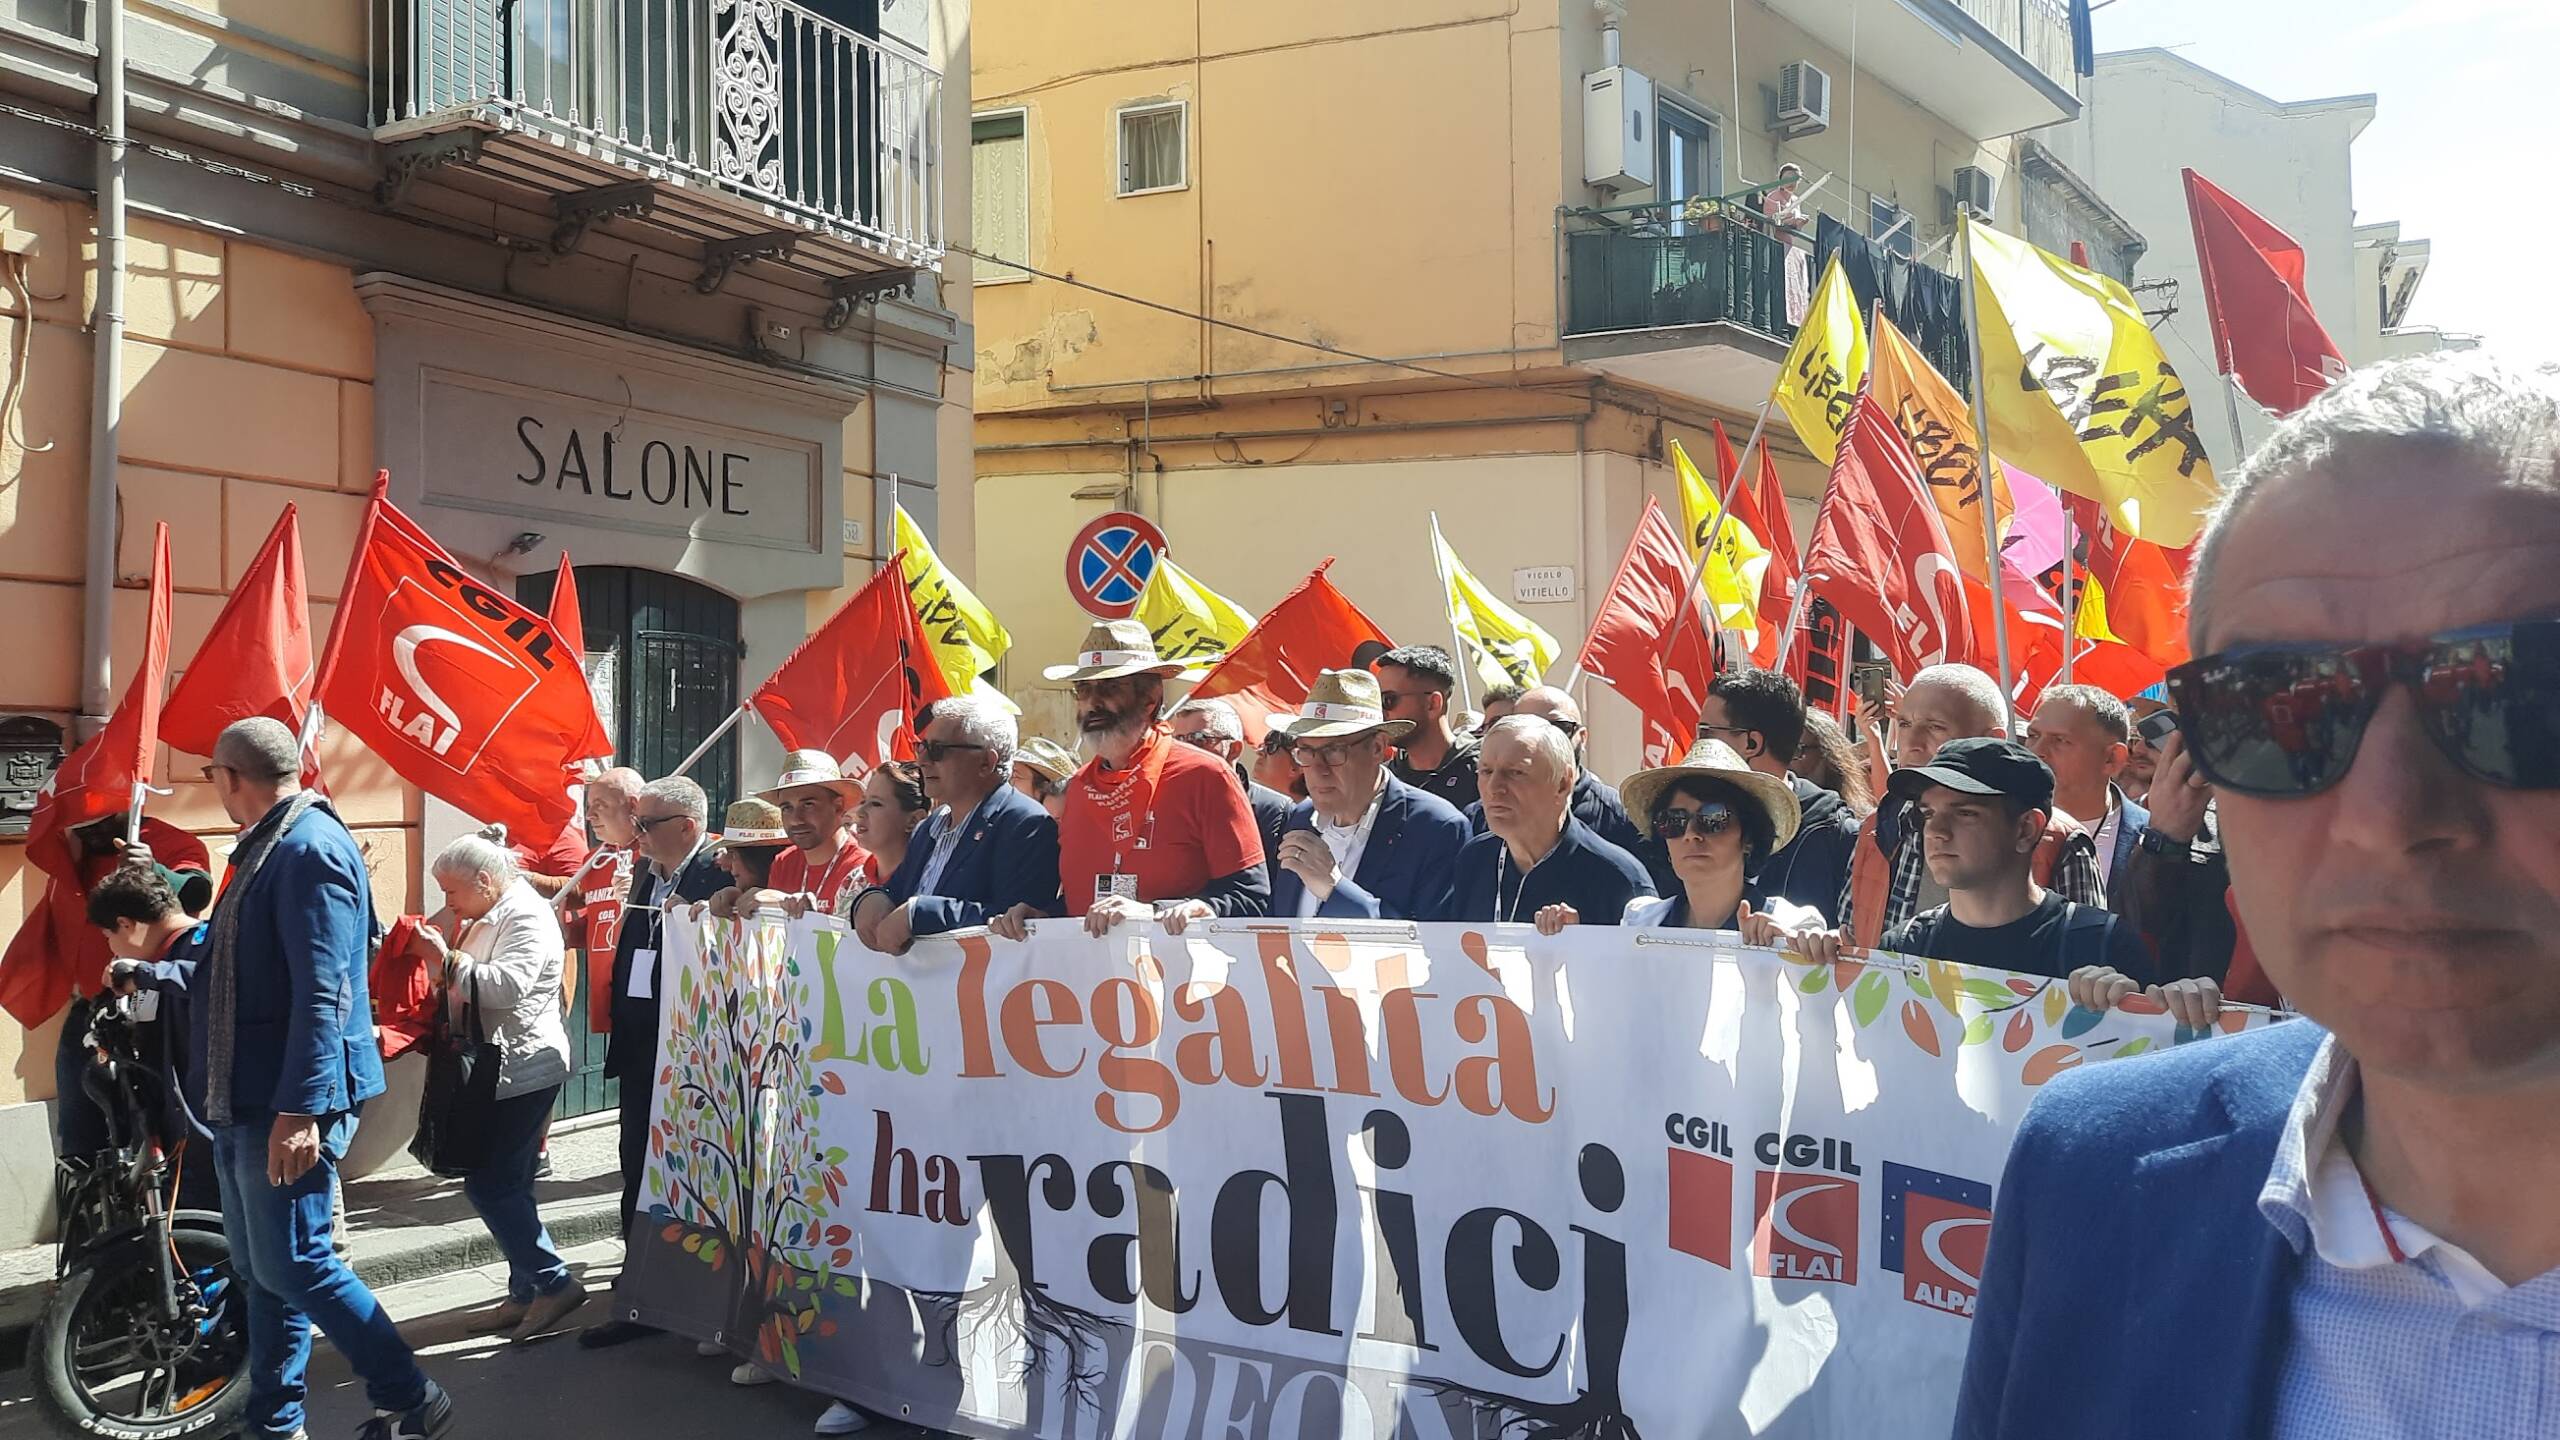 A Scafati ‘La legalità ha radici profonde’: grande manifestazione in difesa del Fondo Nappo e dei beni confiscati